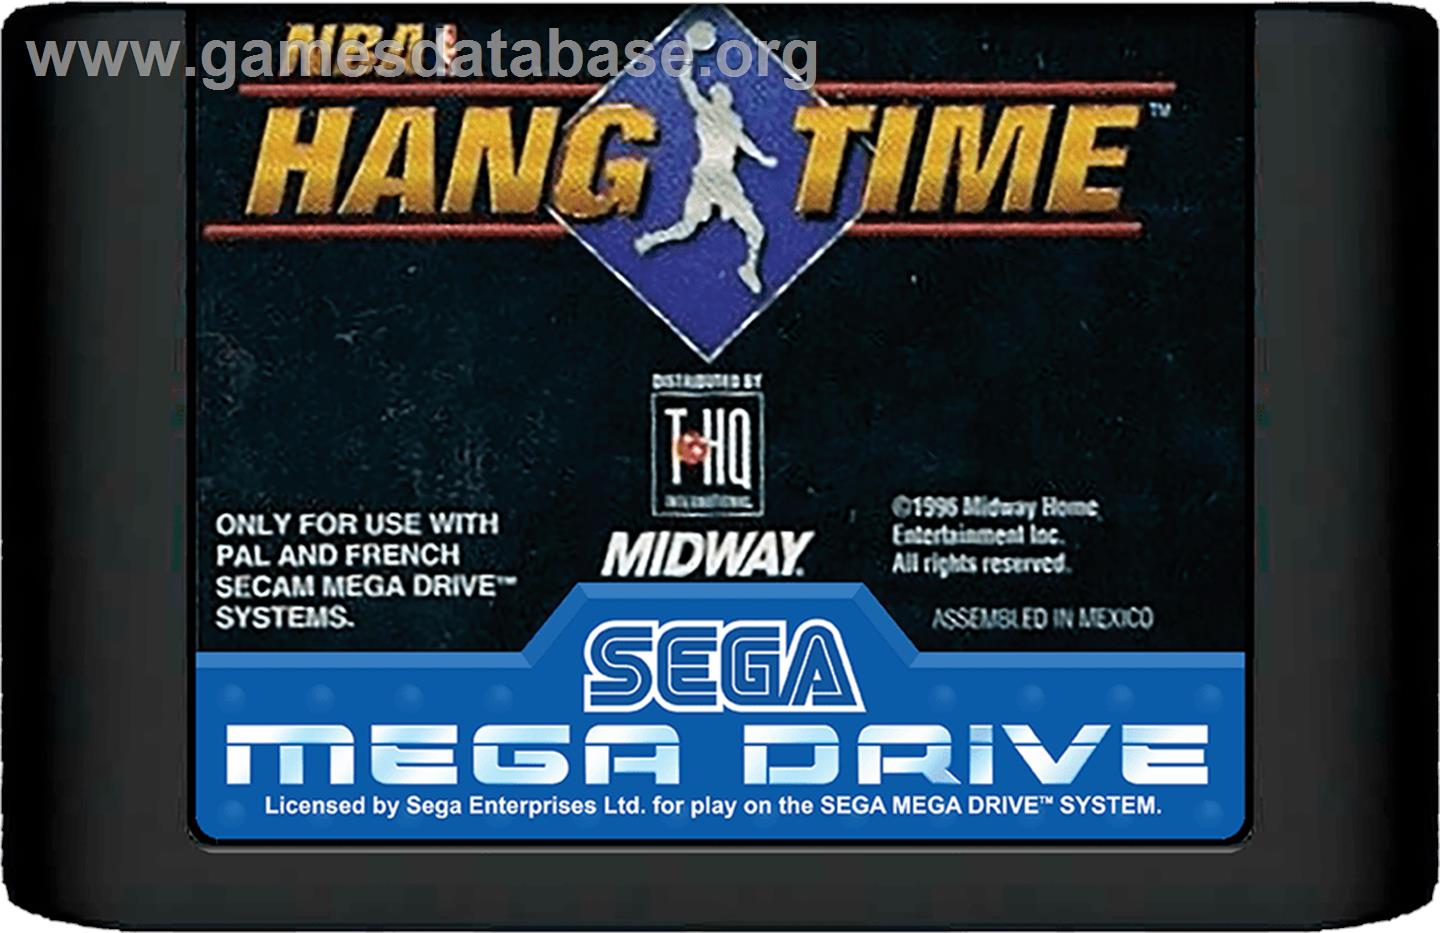 NBA Hang Time - Sega Genesis - Artwork - Cartridge